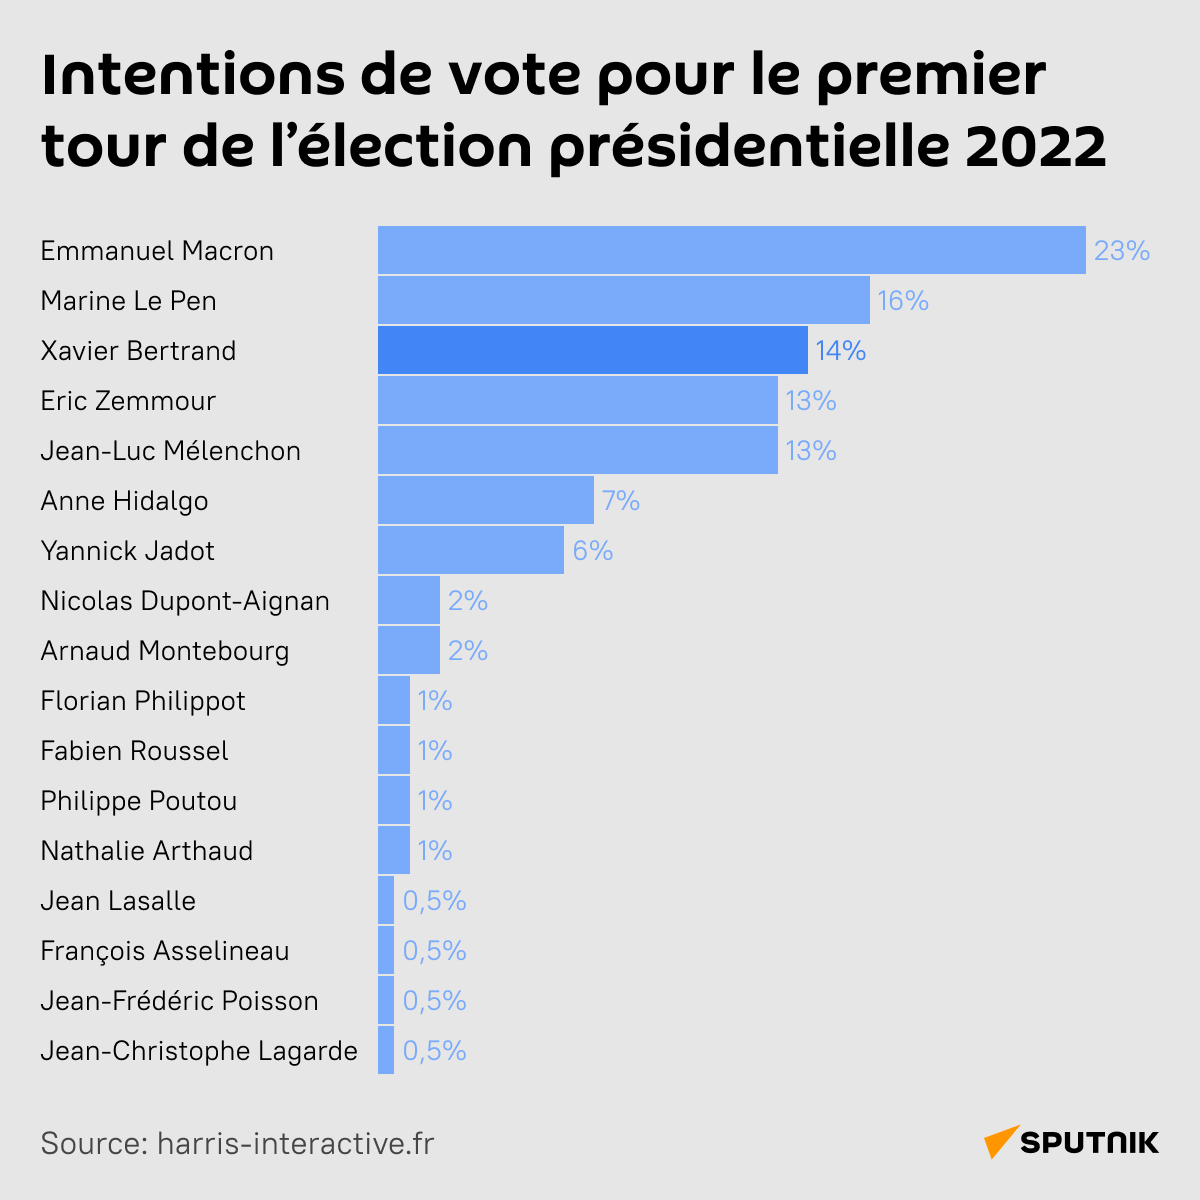 Intentions de vote pour le premier tour de l’élection présidentielle 2022 (en pourcentage) - Sputnik Afrique